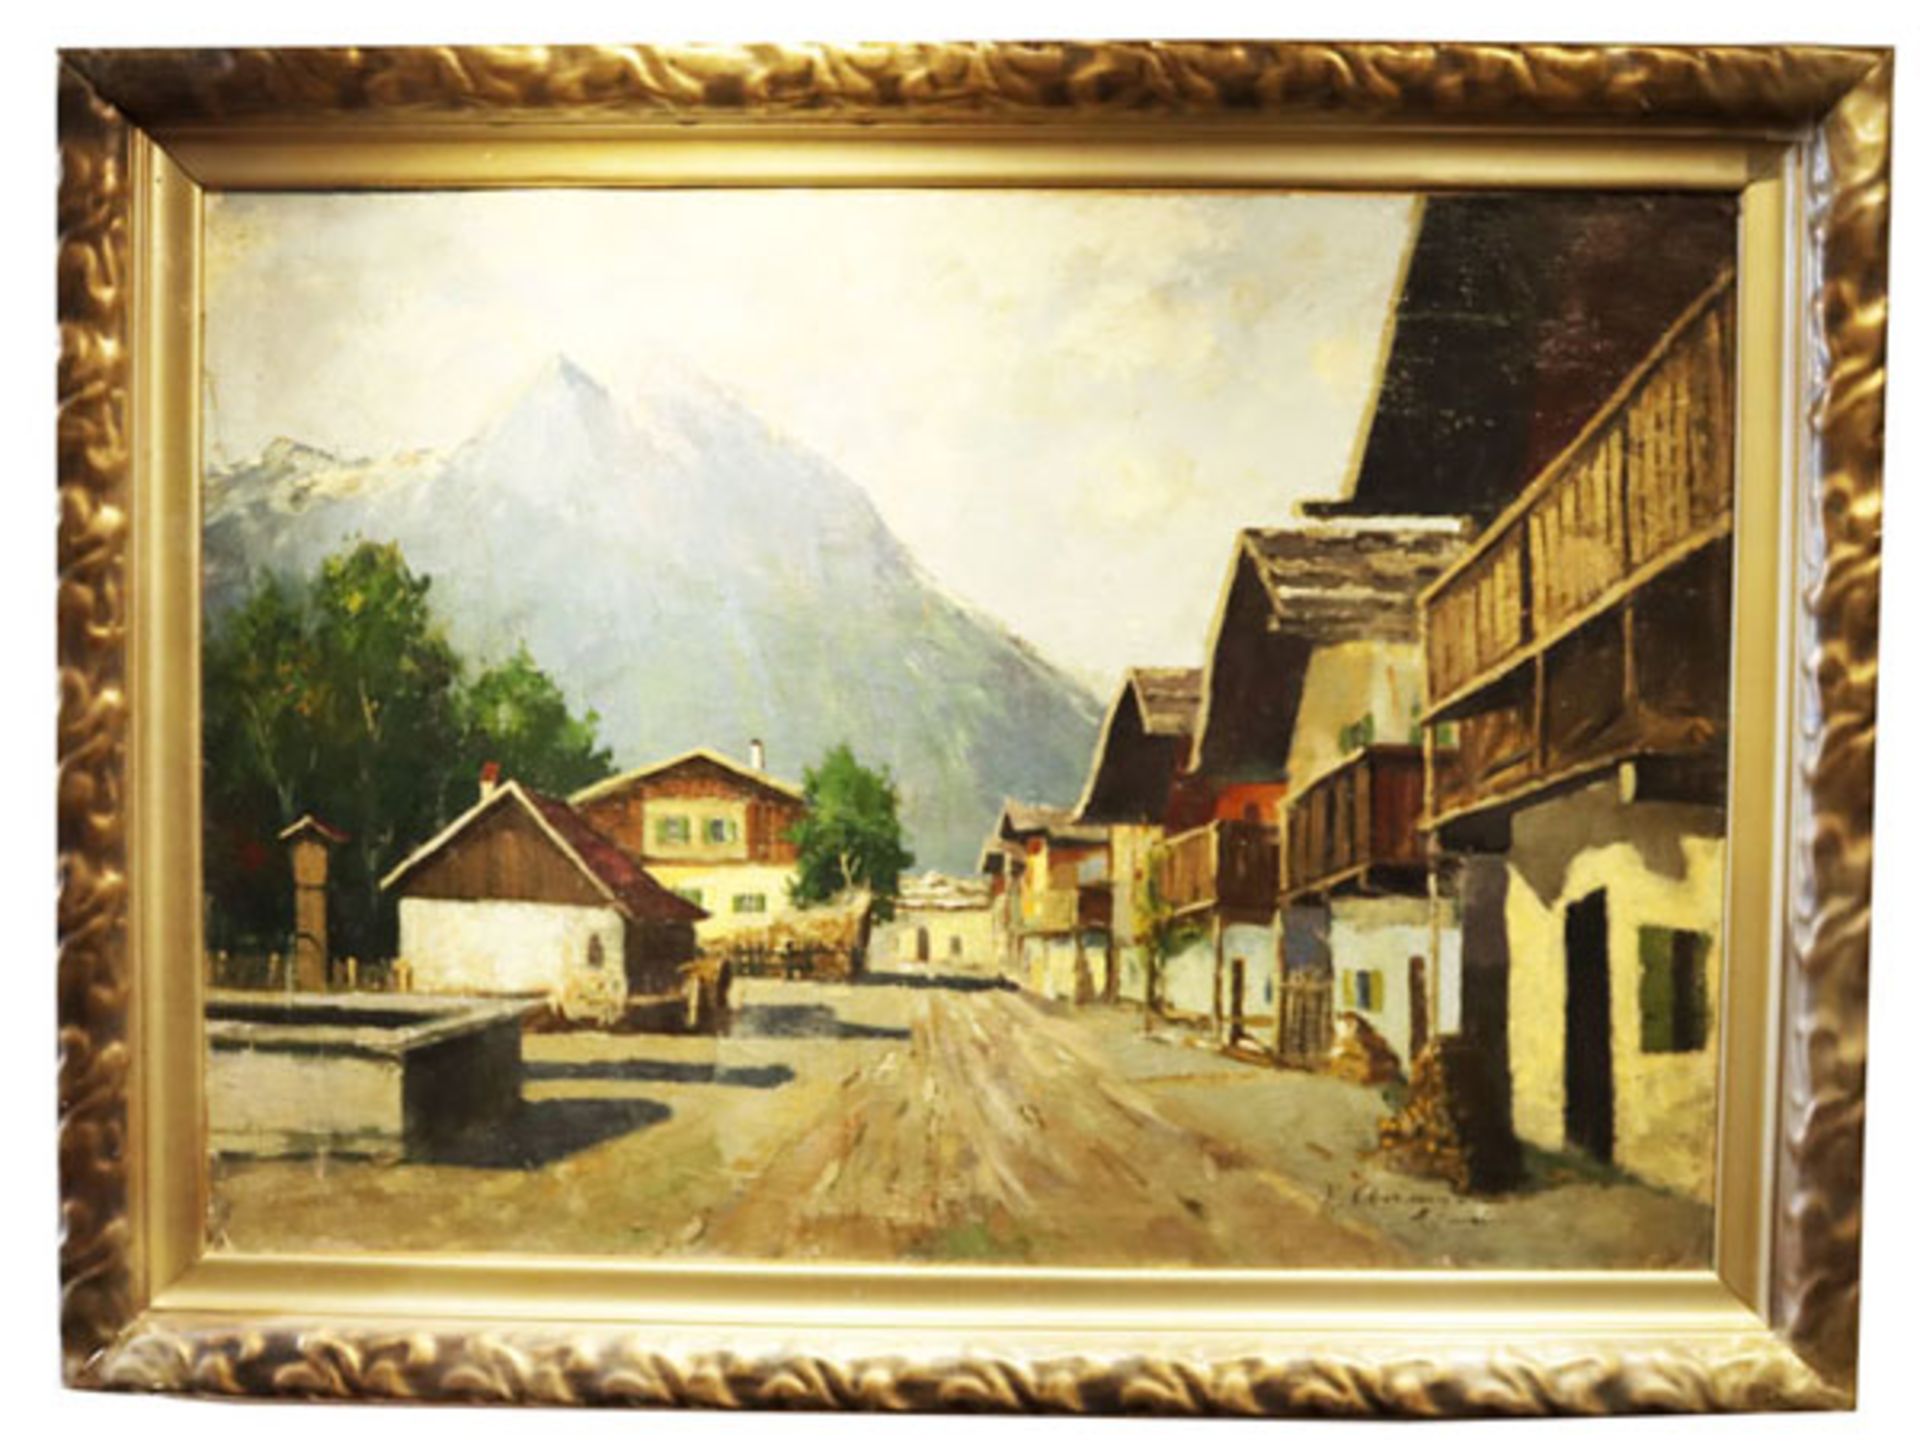 Gemälde ÖL/LW 'Frühlingsstrasse in Garmisch mit Blick zum Wettersteingebirge', undeutlich signiert